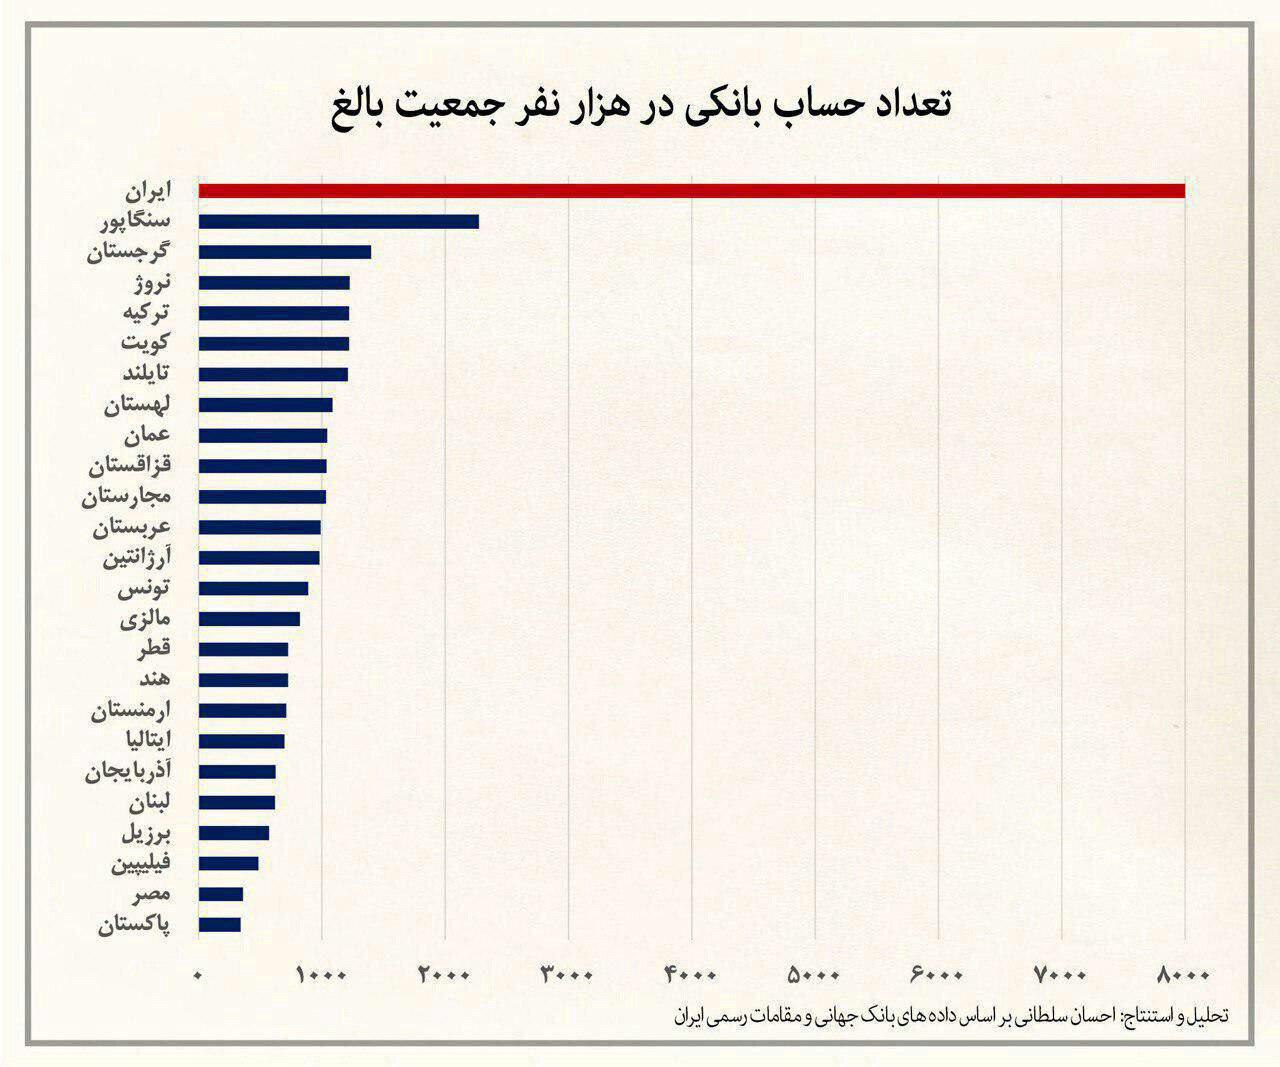 ️  ایران دارای بالاترین نسبت تعداد حساب بانکی به جمعیت در جهان